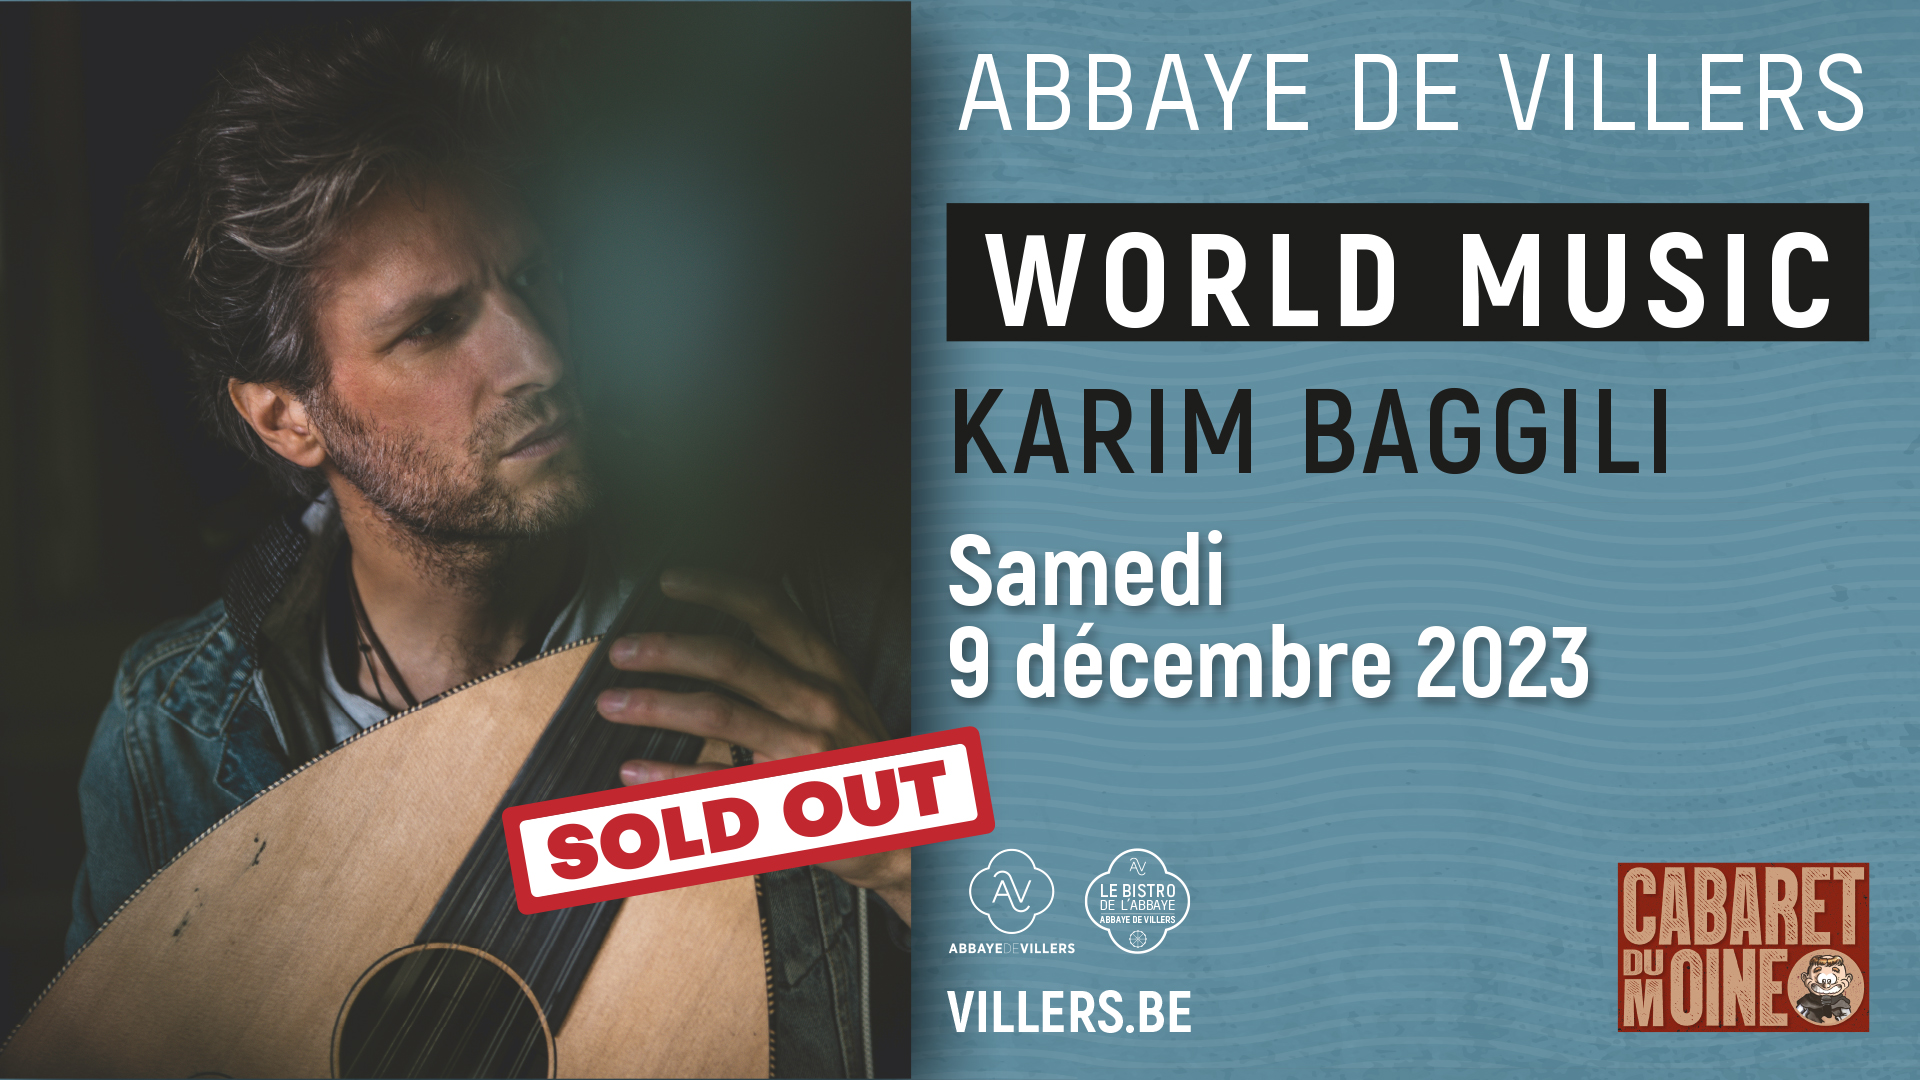 Karim Baggili en concert - SOLD OUT !